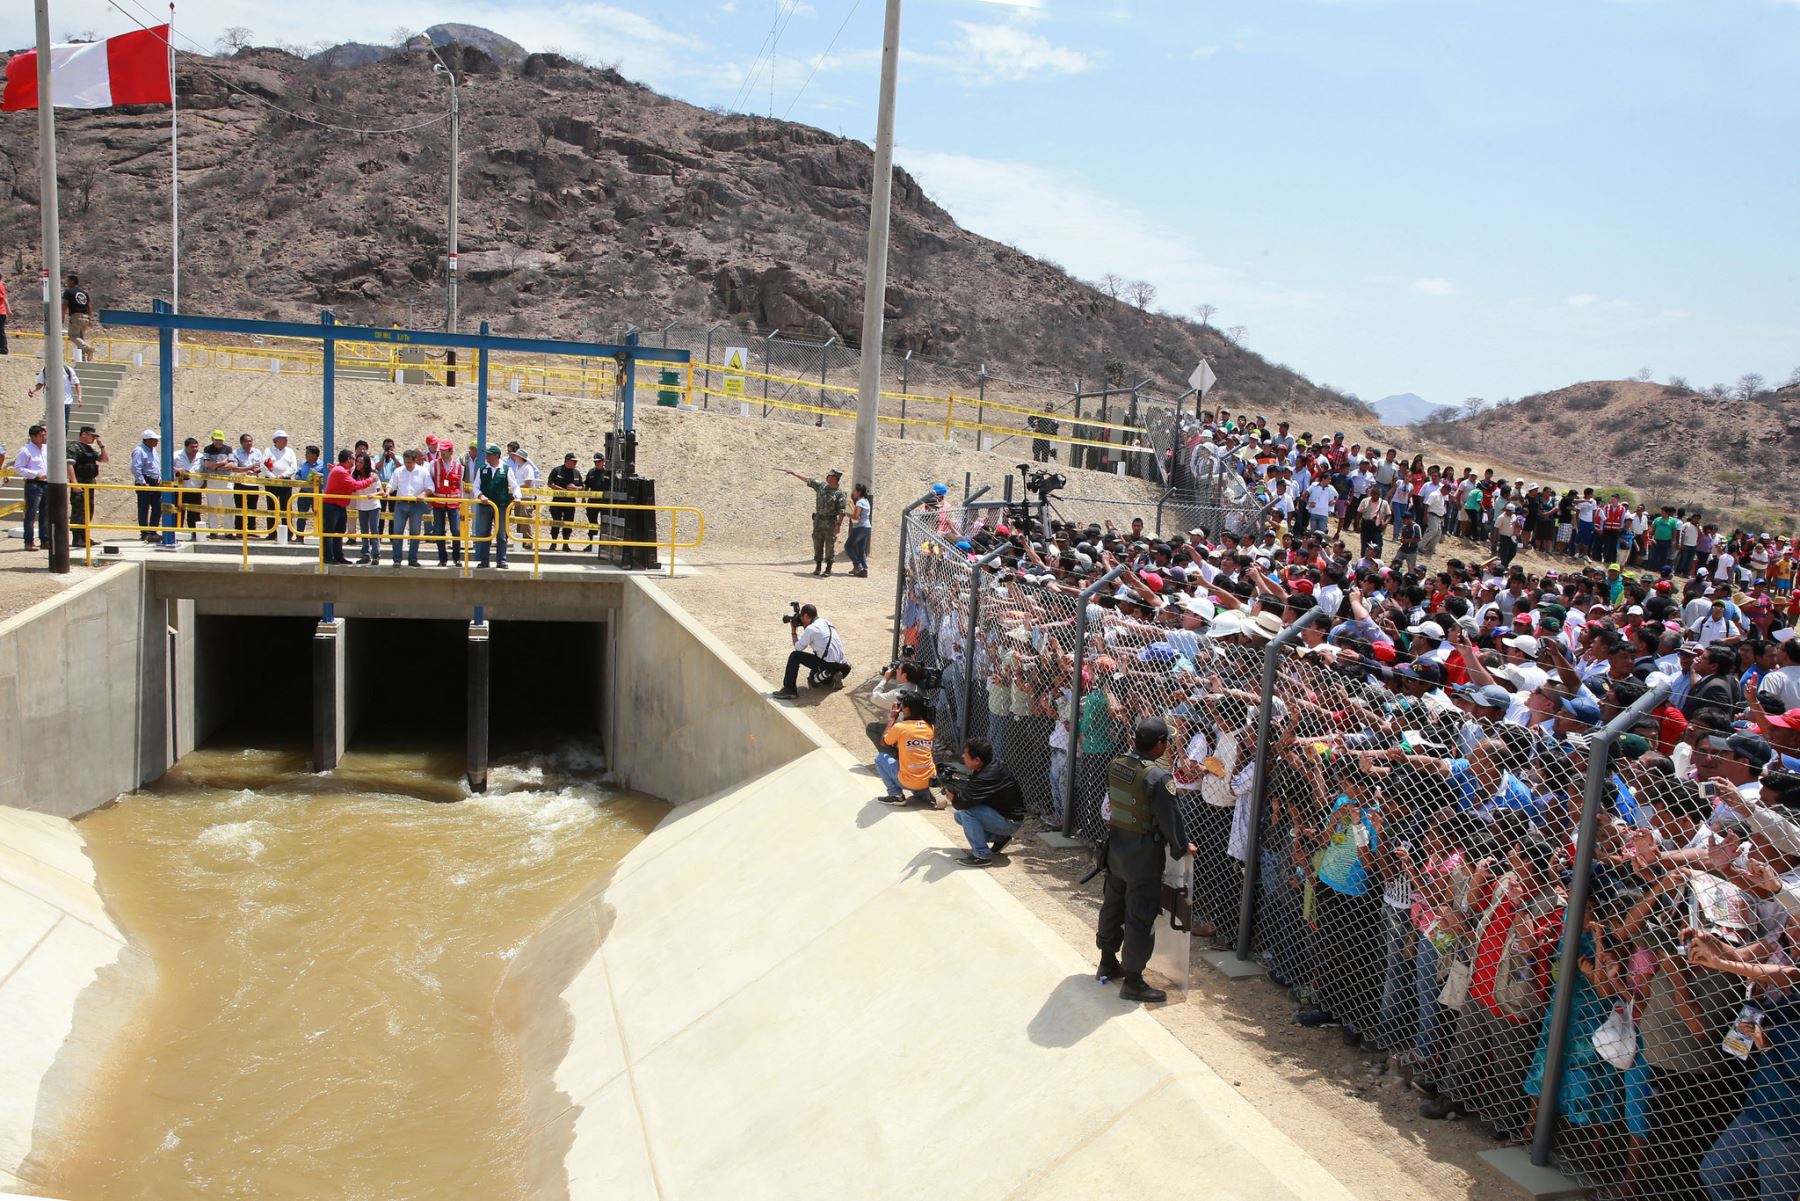 Presidente de la República, Ollanta Humala Tasso, participó en la inauguración del “Proyecto de Irrigación Olmos” en Región Lambayeque